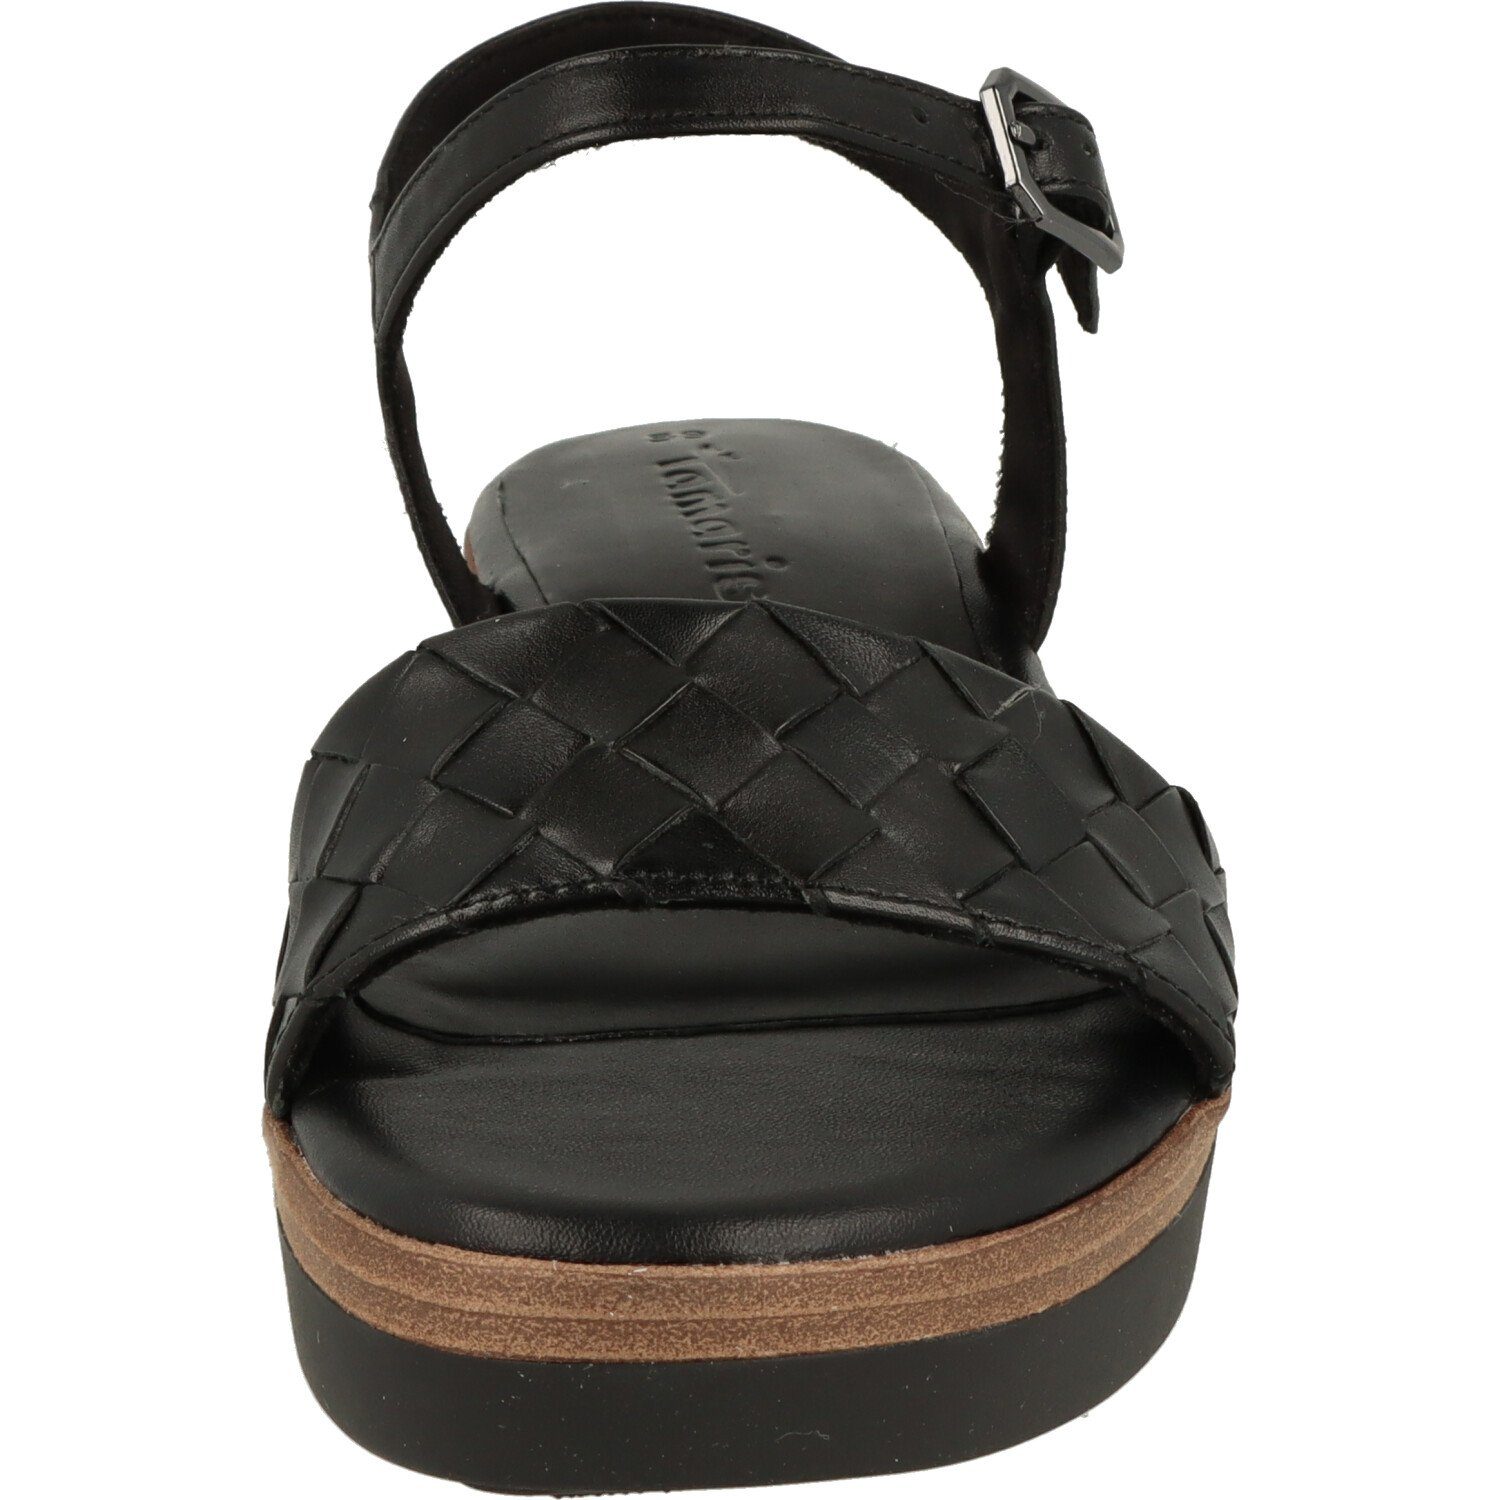 Tamaris Damen Black Komfort 1-28216-20 Schuhe Riemchen Sandalette Sandalette Leder